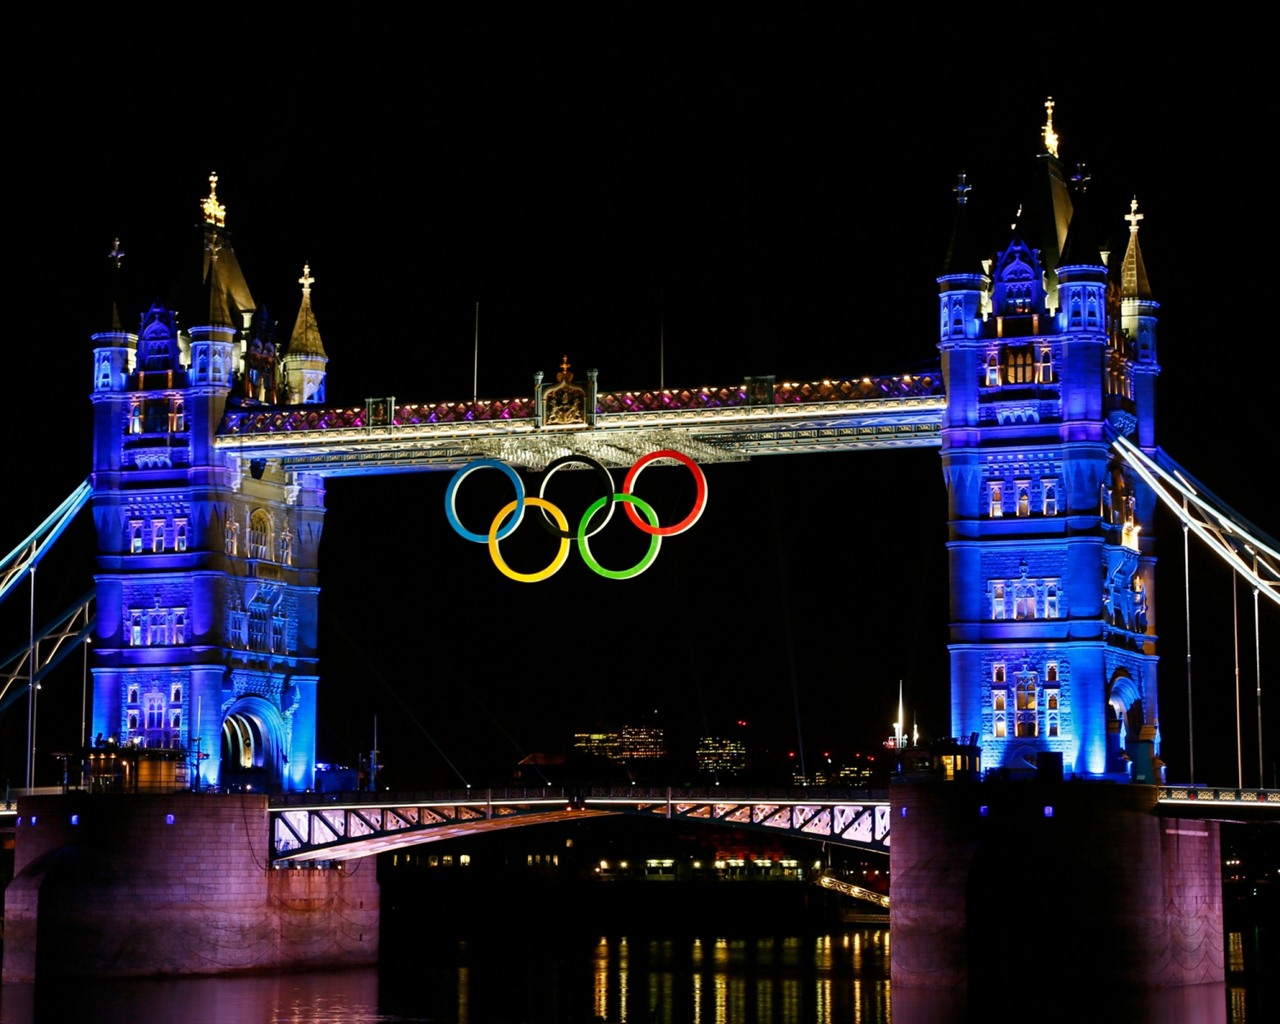 Londres 2012 Olimpiadas fondos temáticos (1) #4 - 1280x1024